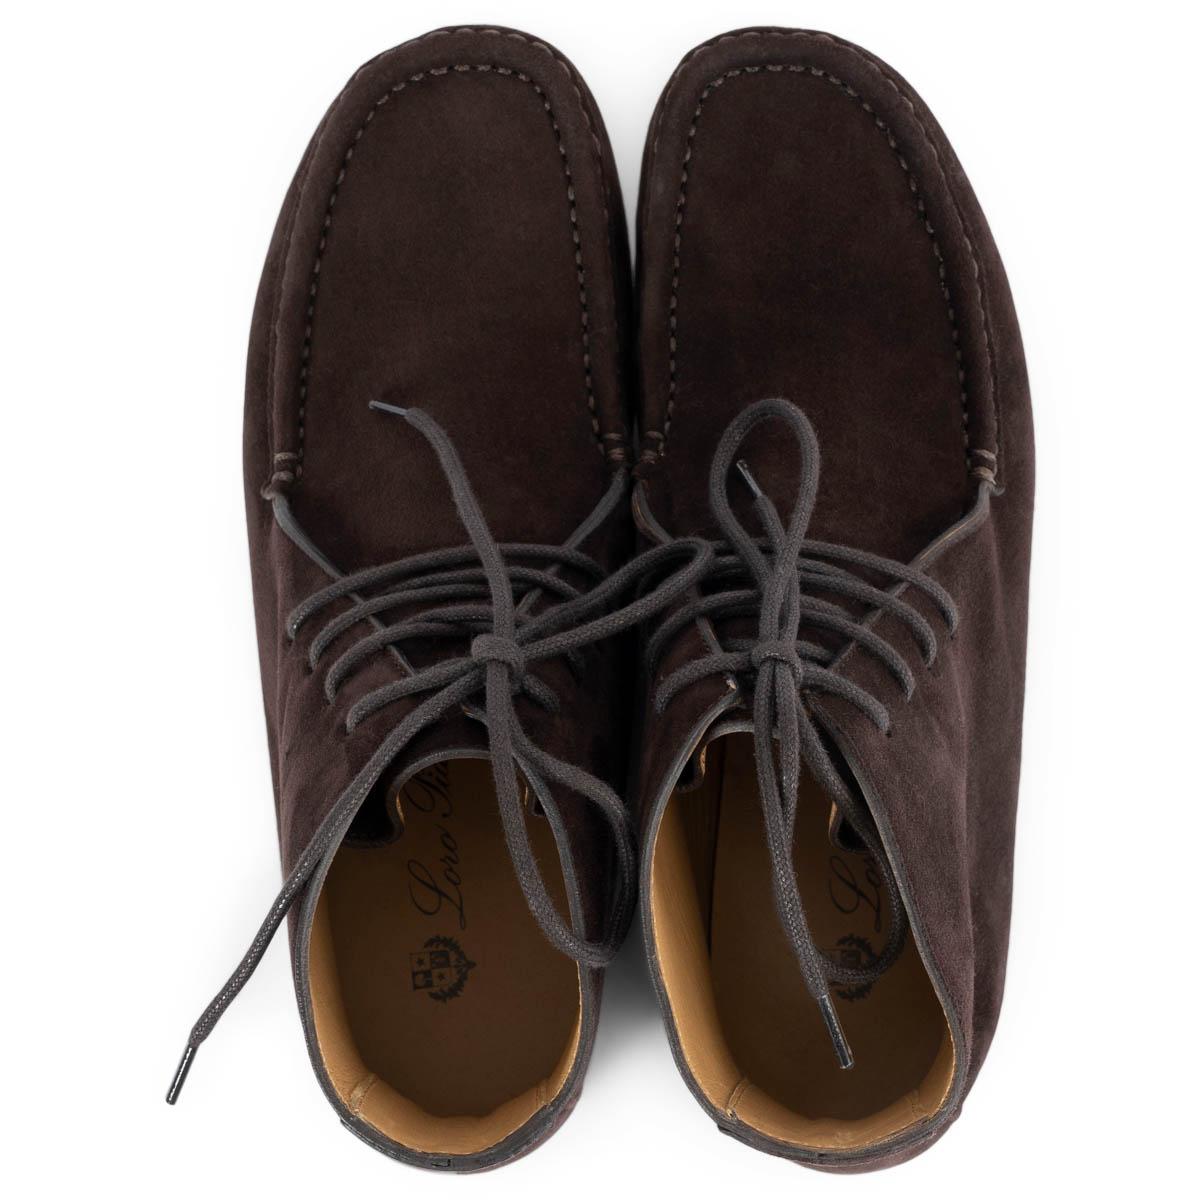 LORO PIANA daim marron chocolat DOT SOLELE LACE-UP ANKLE Boots Shoes 37.5 Pour femmes en vente